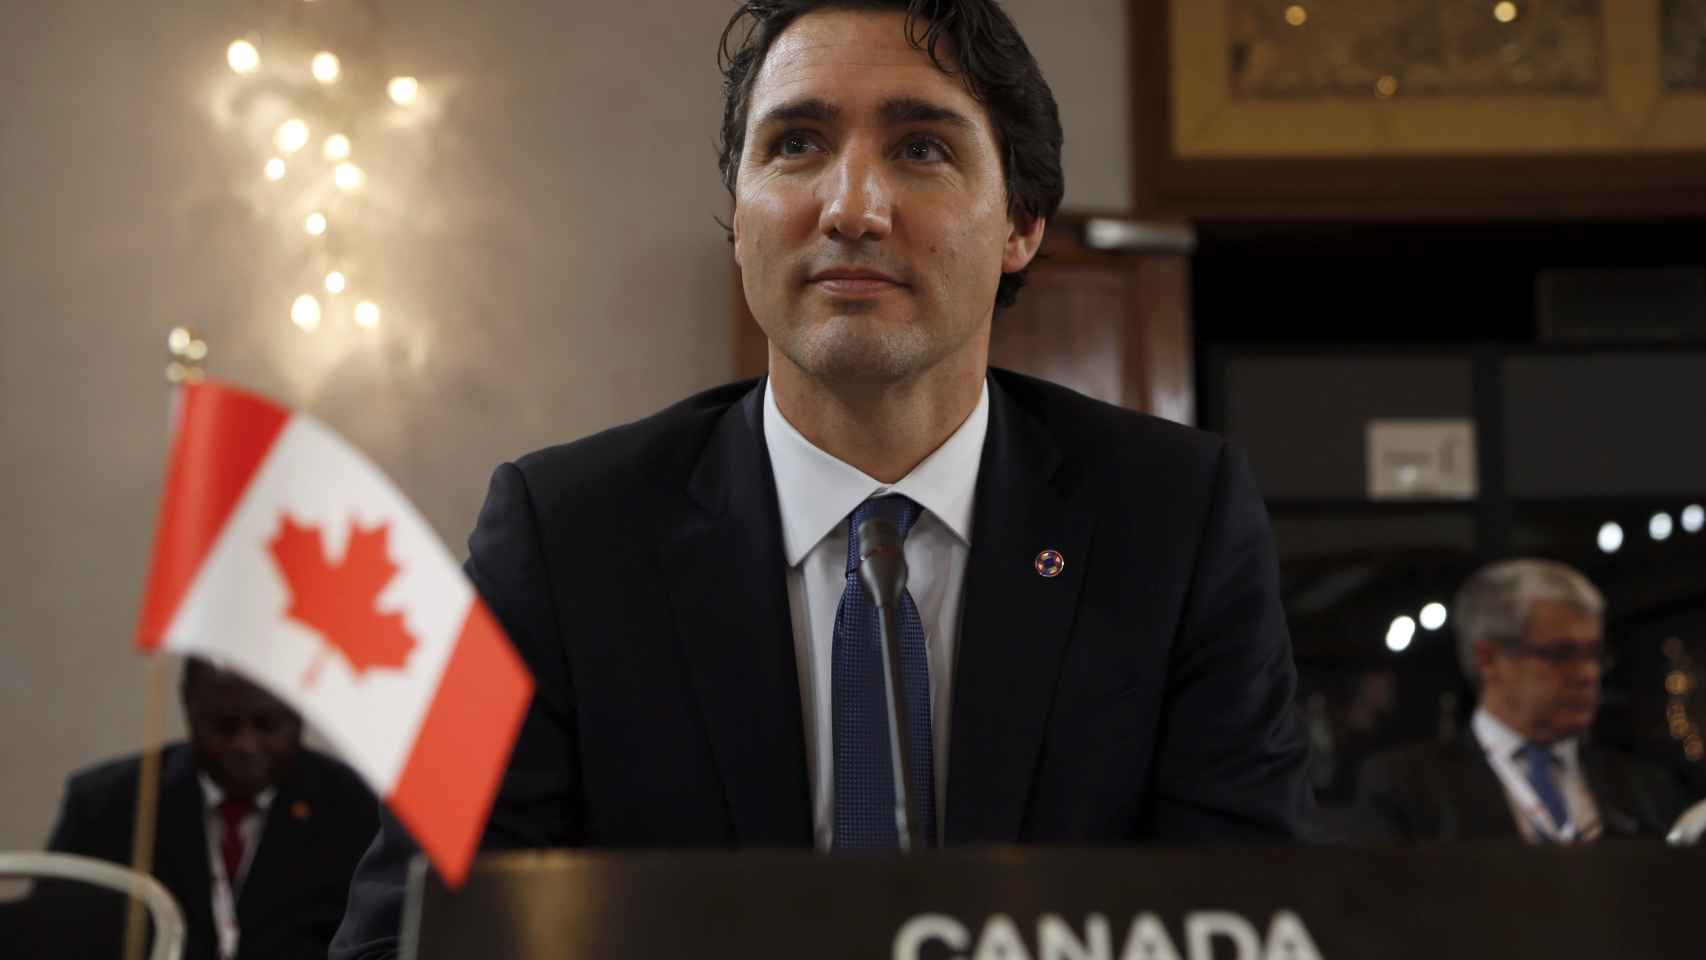 Justin-Trudeau-primer-ministro-Canada_83001792_242342_1706x960.jpg